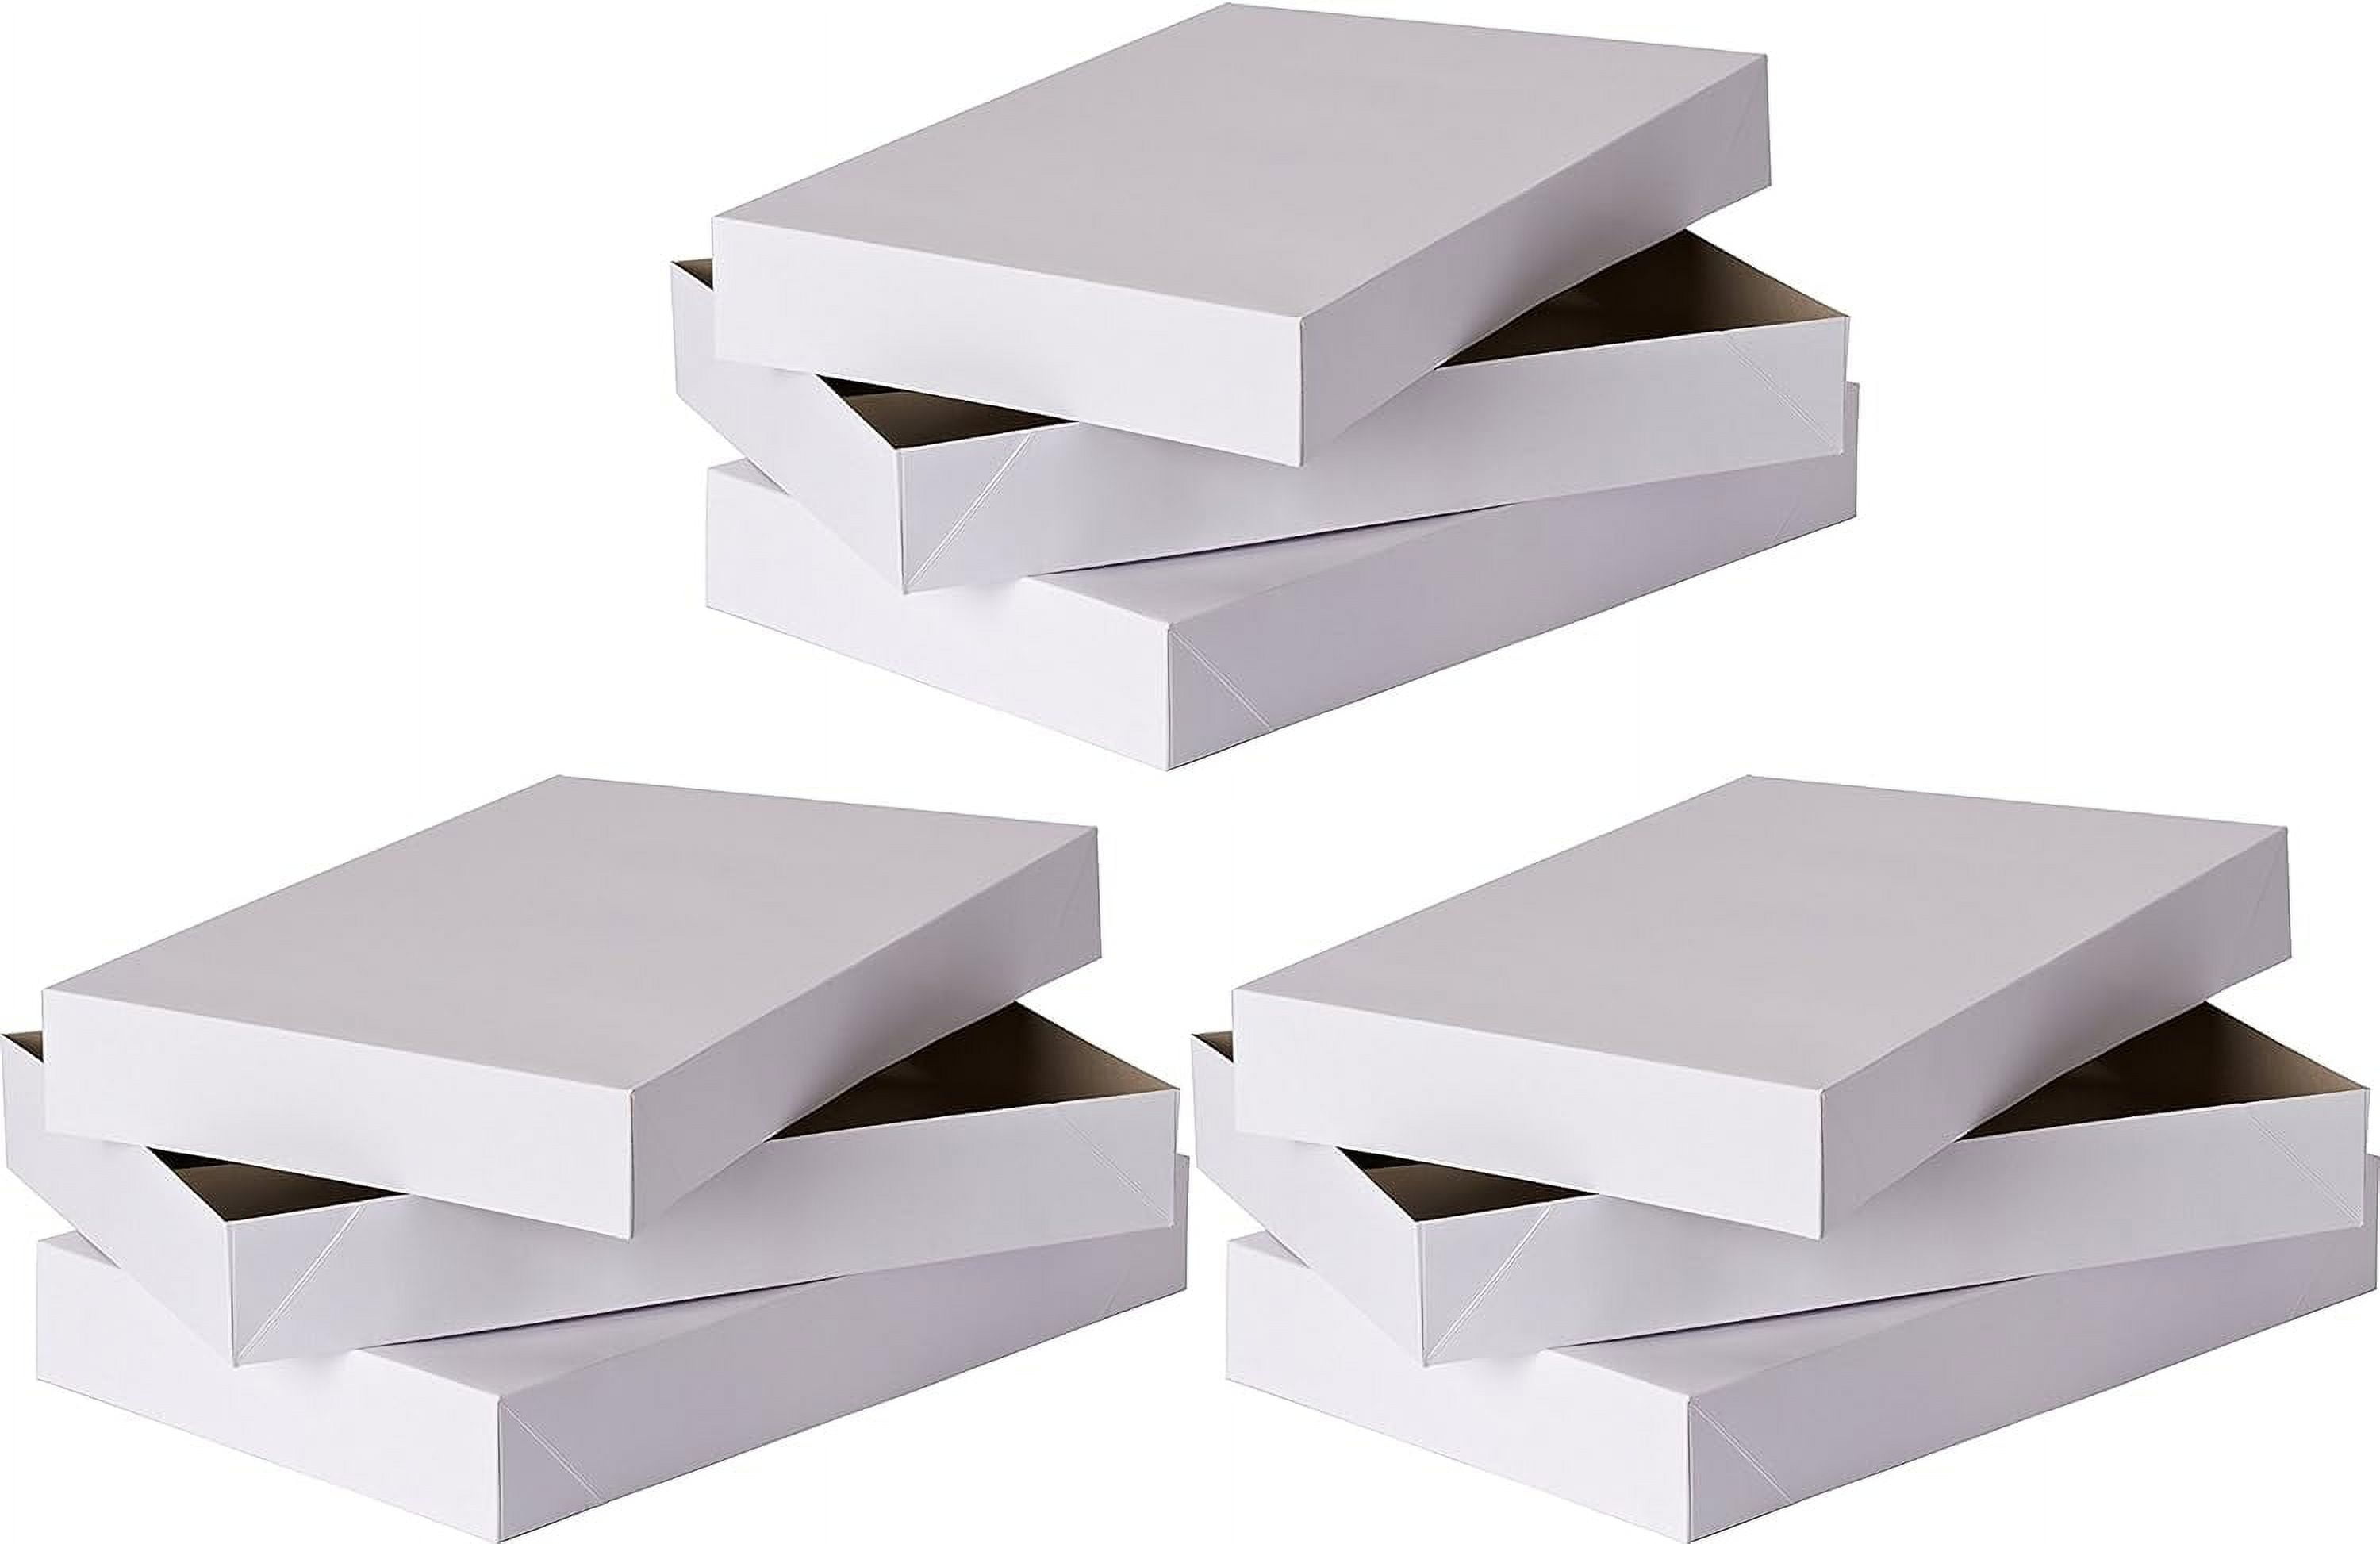  BELLE VOUS Paquete de 50 mini cajas de regalo de corazón blanco  y marrón, 2 x 2 x 2 pulgadas, cajas de papel kraft para dulces y dulces con  bonitas asas